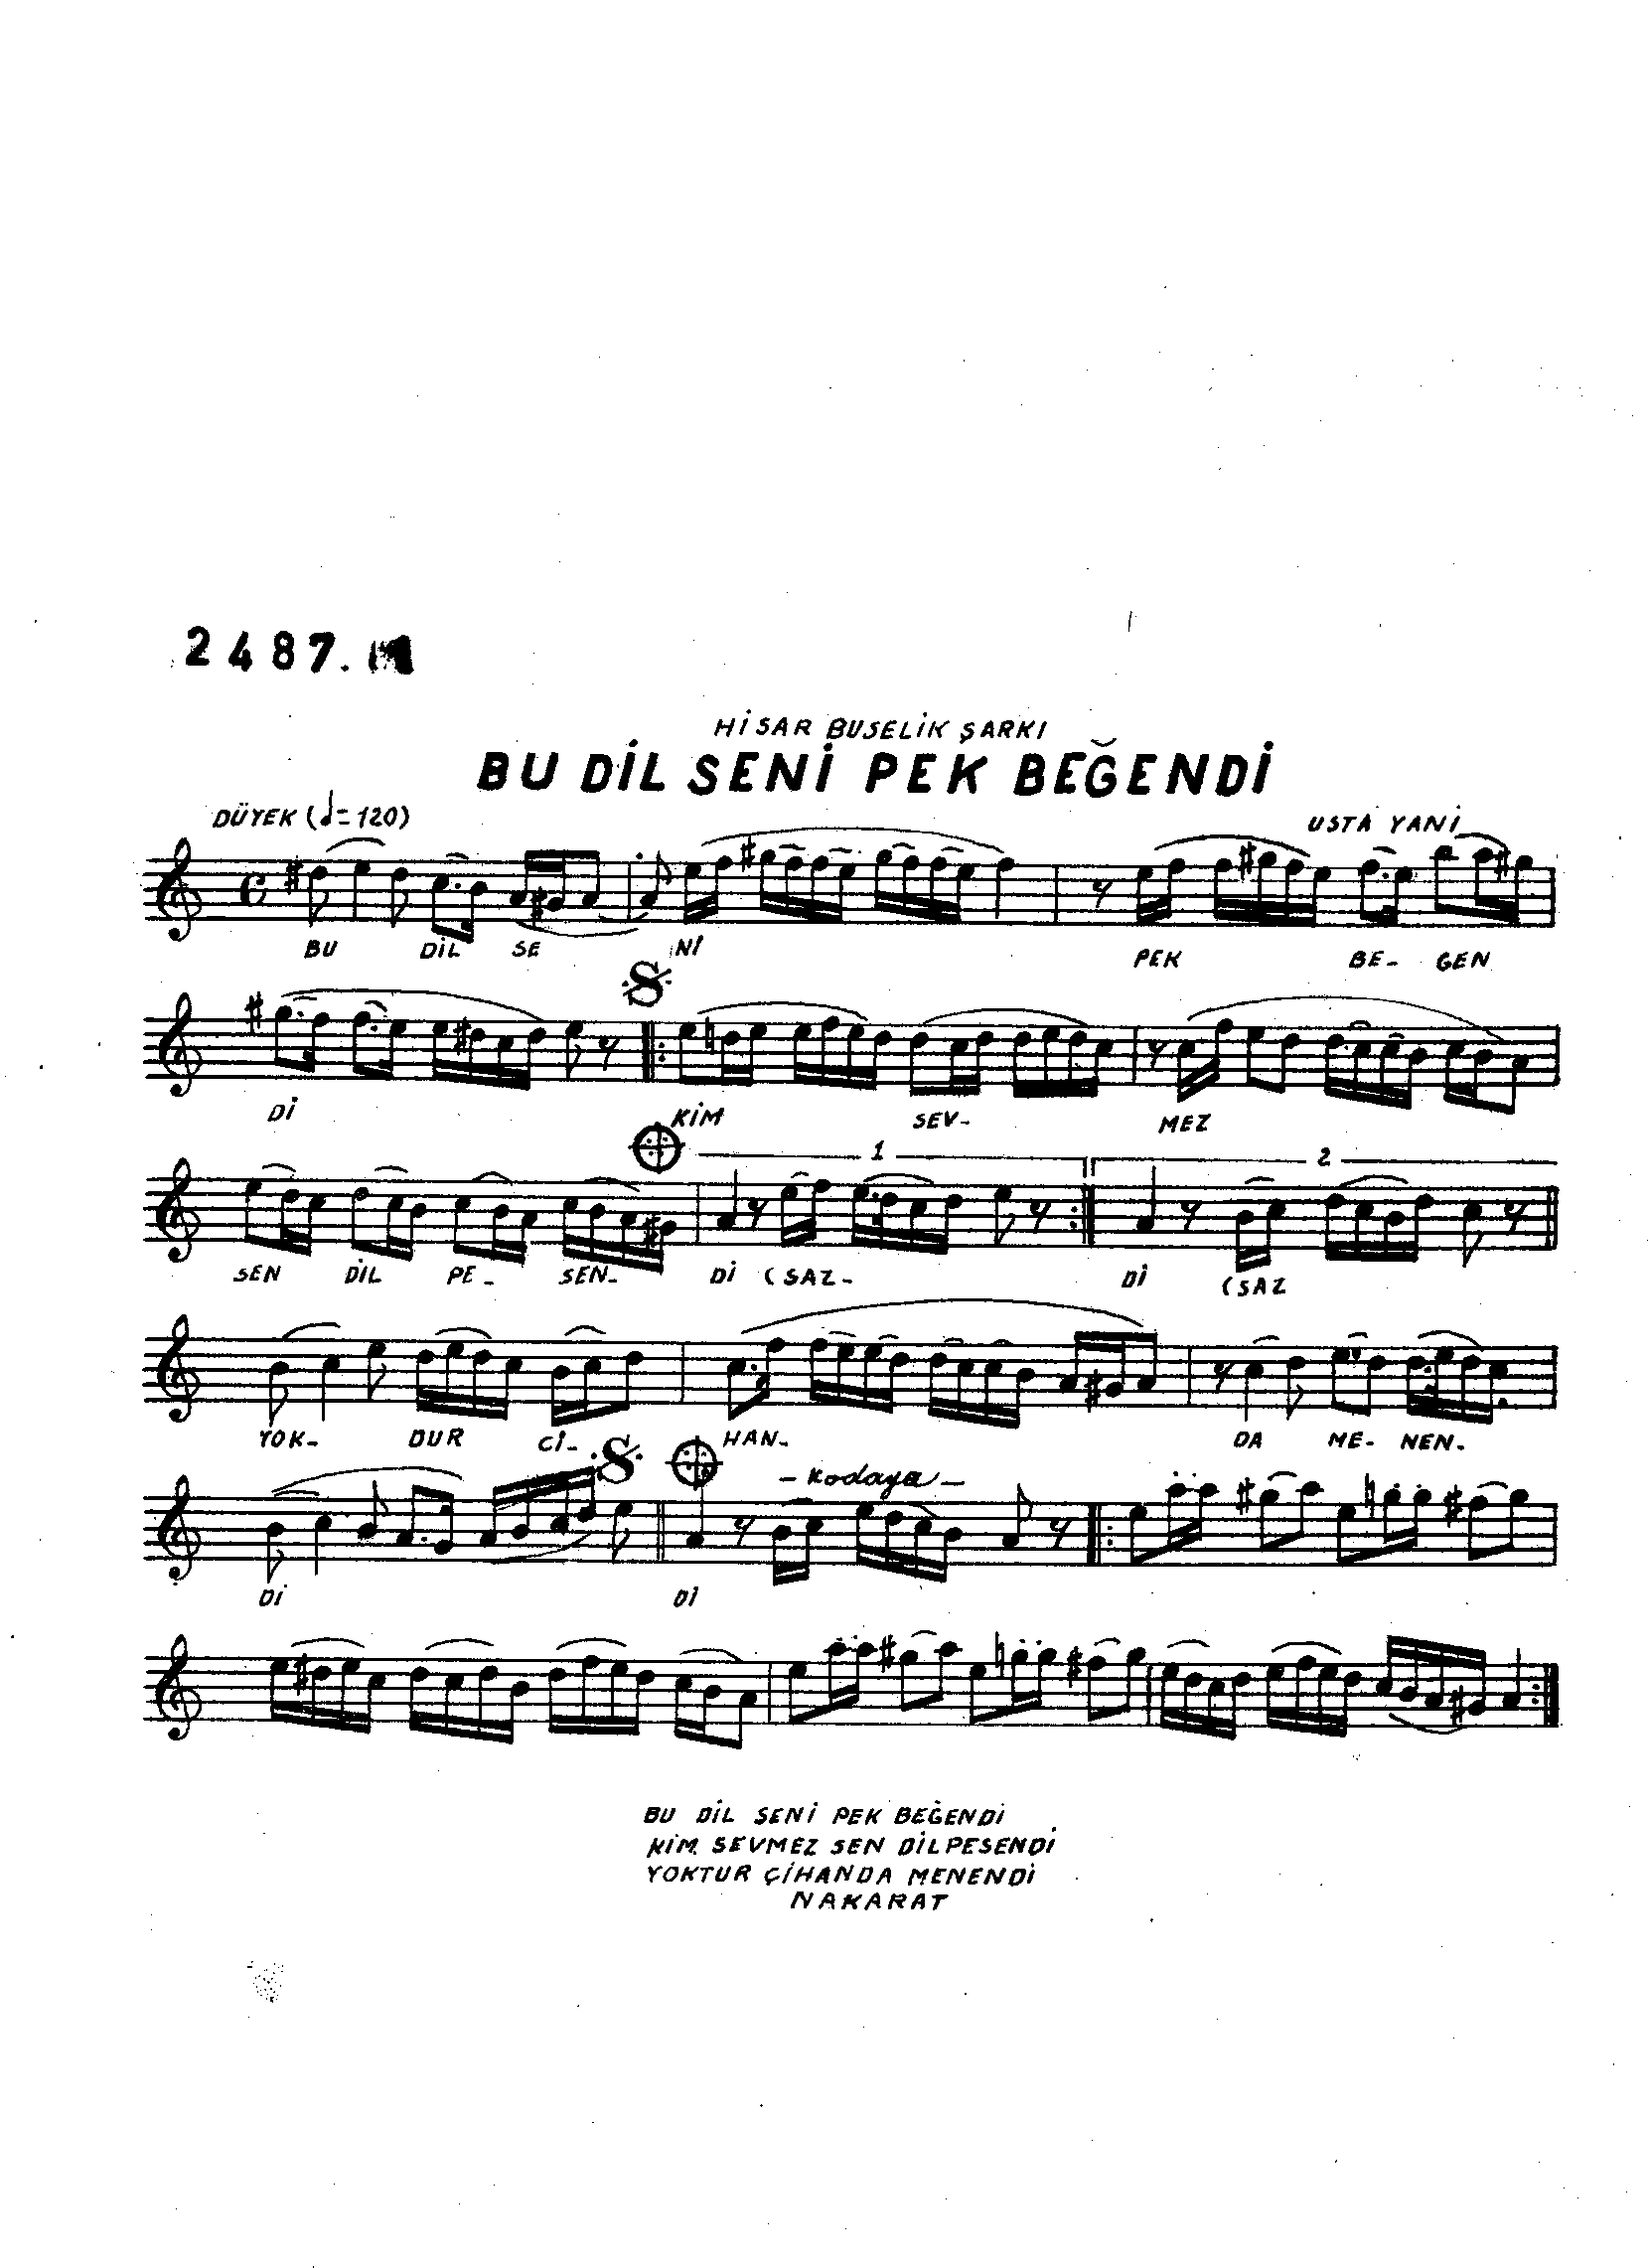 Hisâr-Bûselik - Şarkı - Kemençeci Usta Yani - Sayfa 1